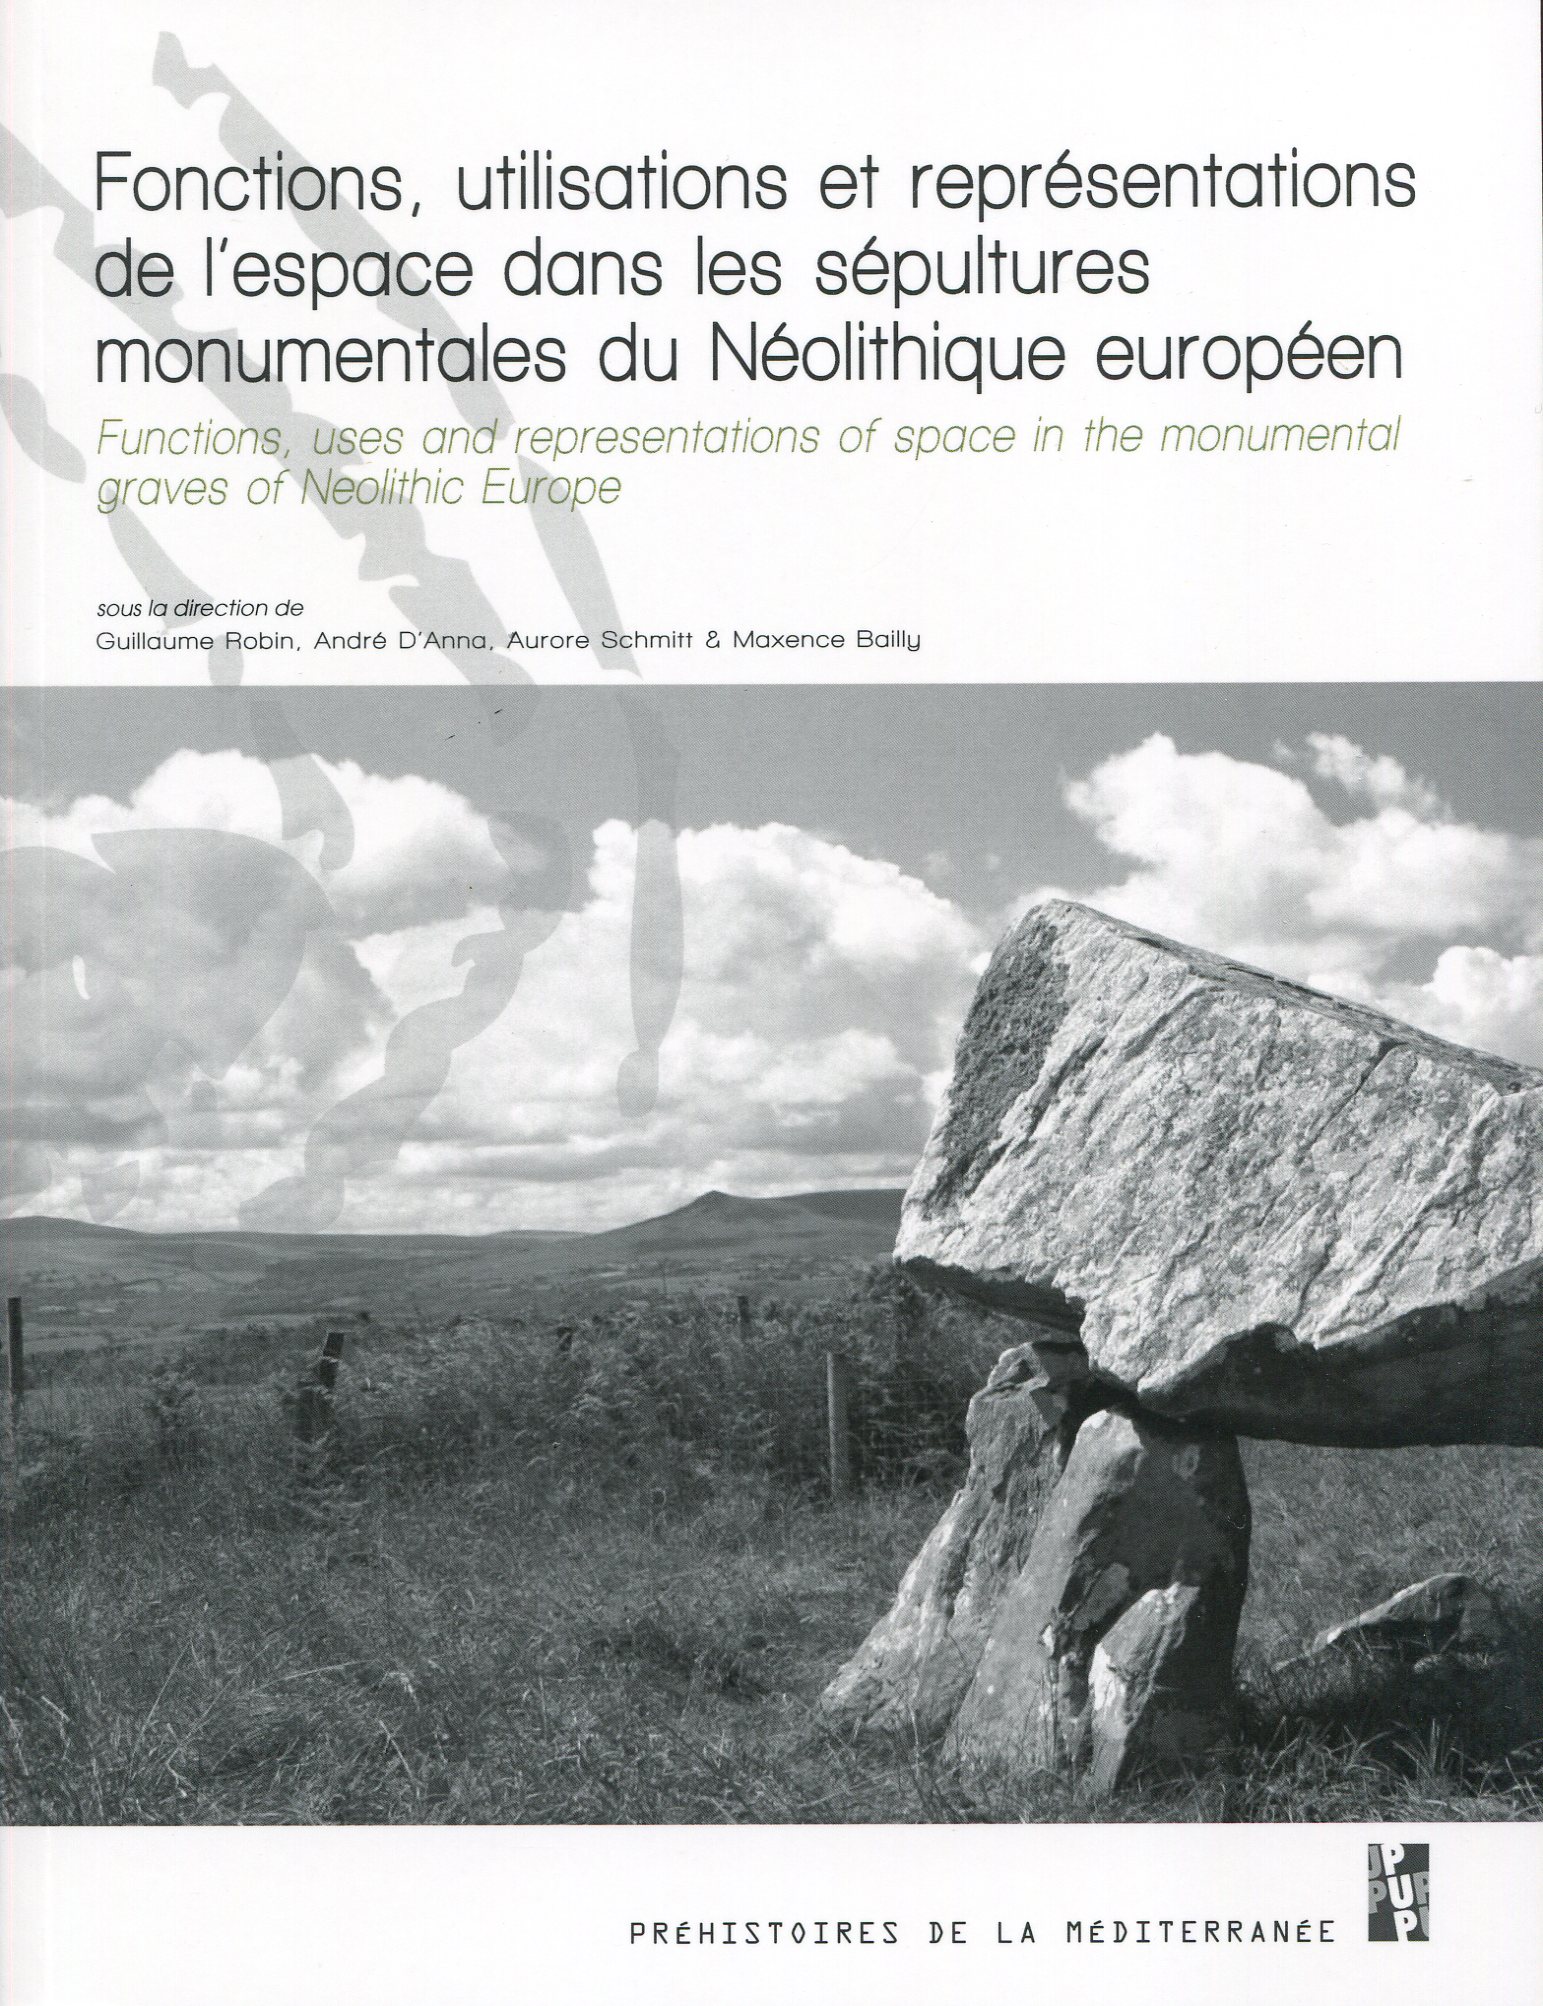 Fonctions utilisations et représentations de l'espace dans les sépultures monumentales du Néolithique européen, 2016, 369 p.